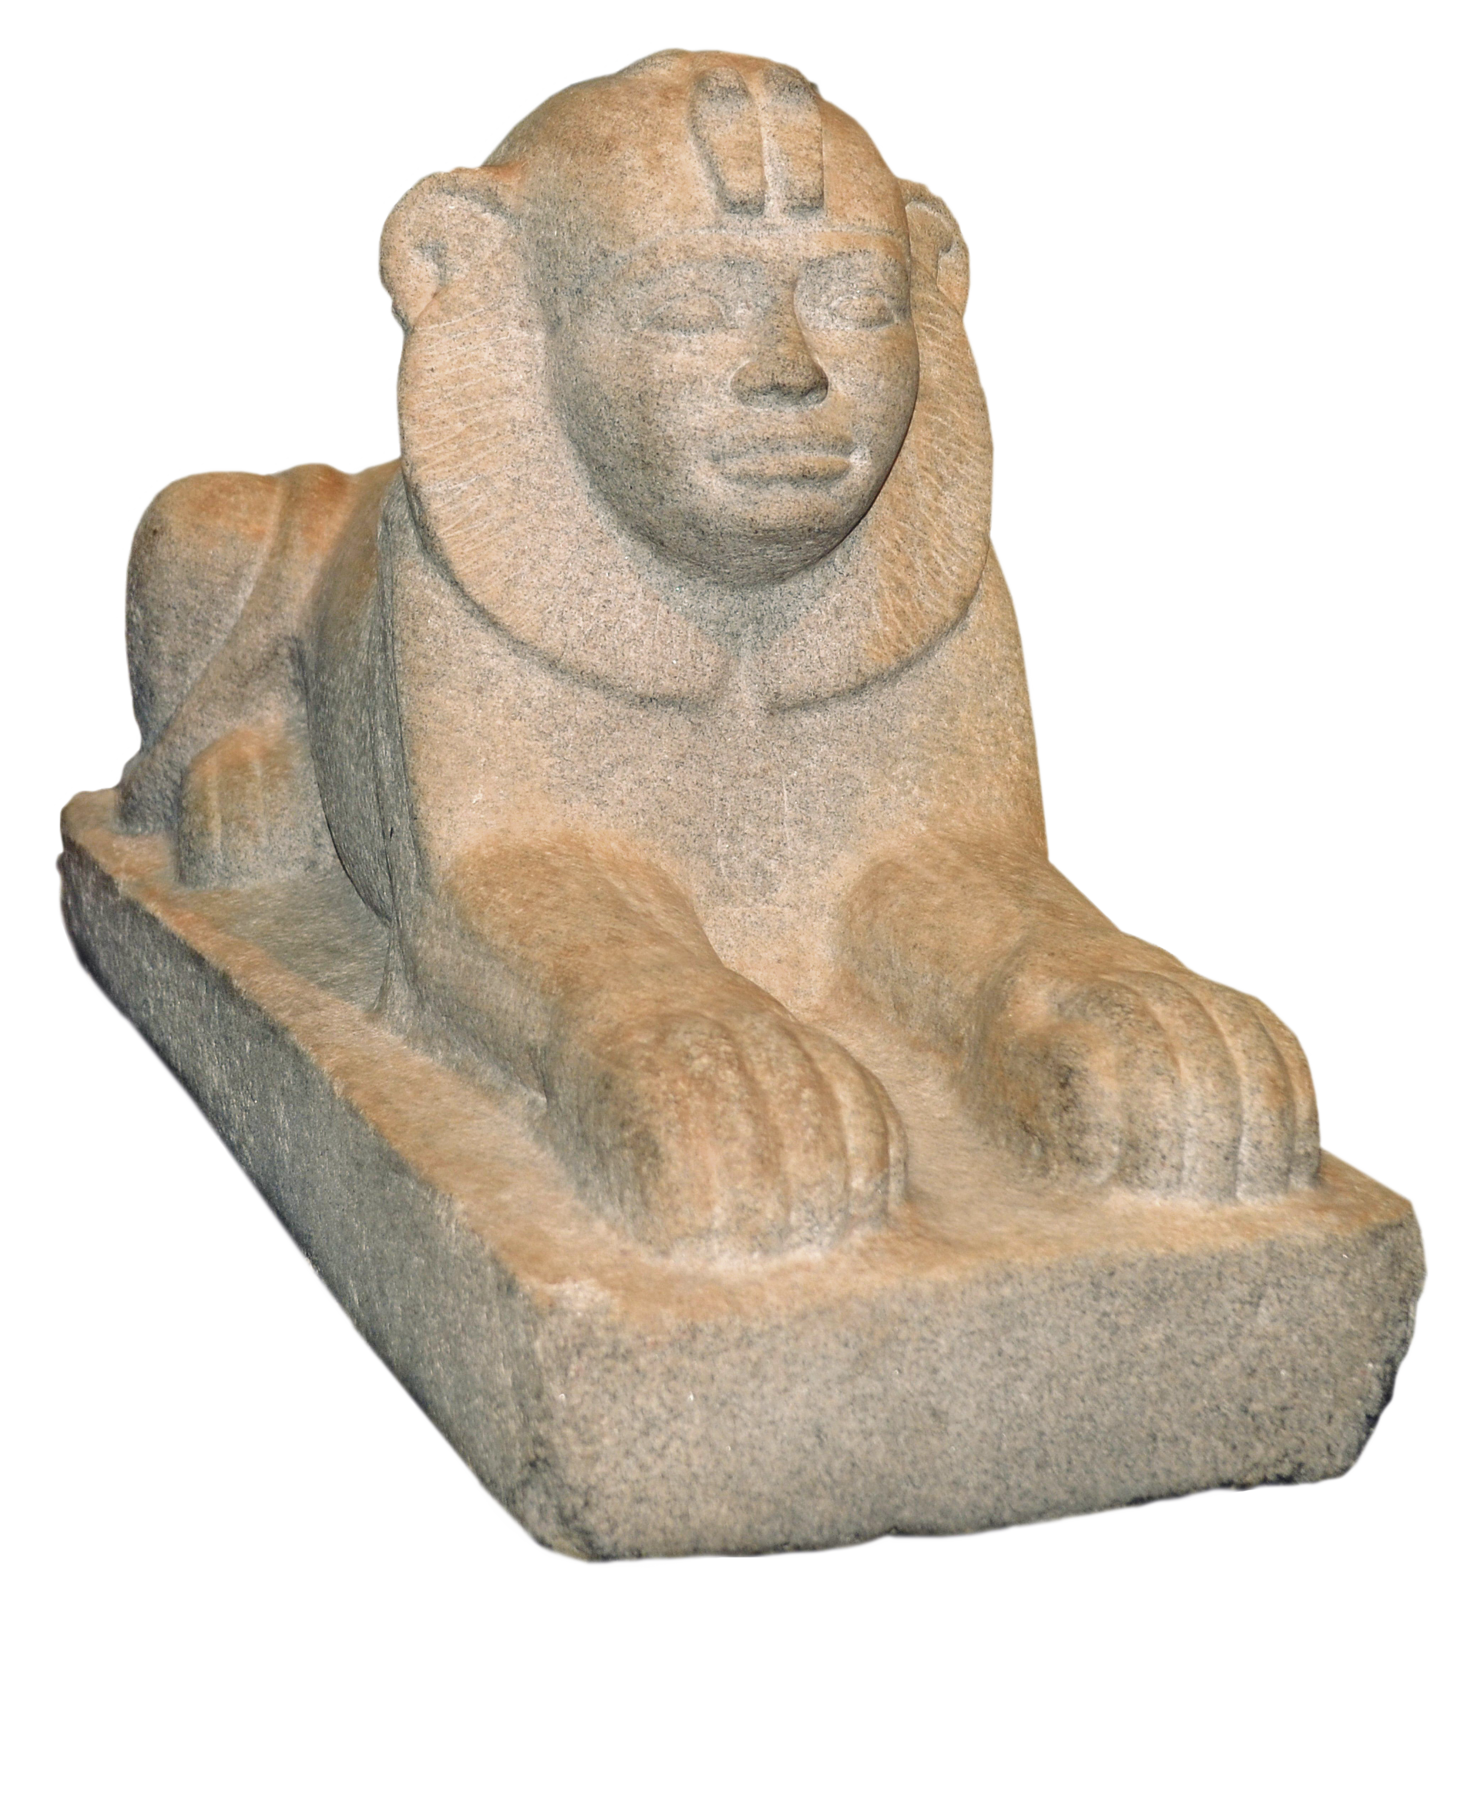 Escultura. Esfinge de pedra, com rosto humano e corpo de animal, com as quatro patas sobre o solo.